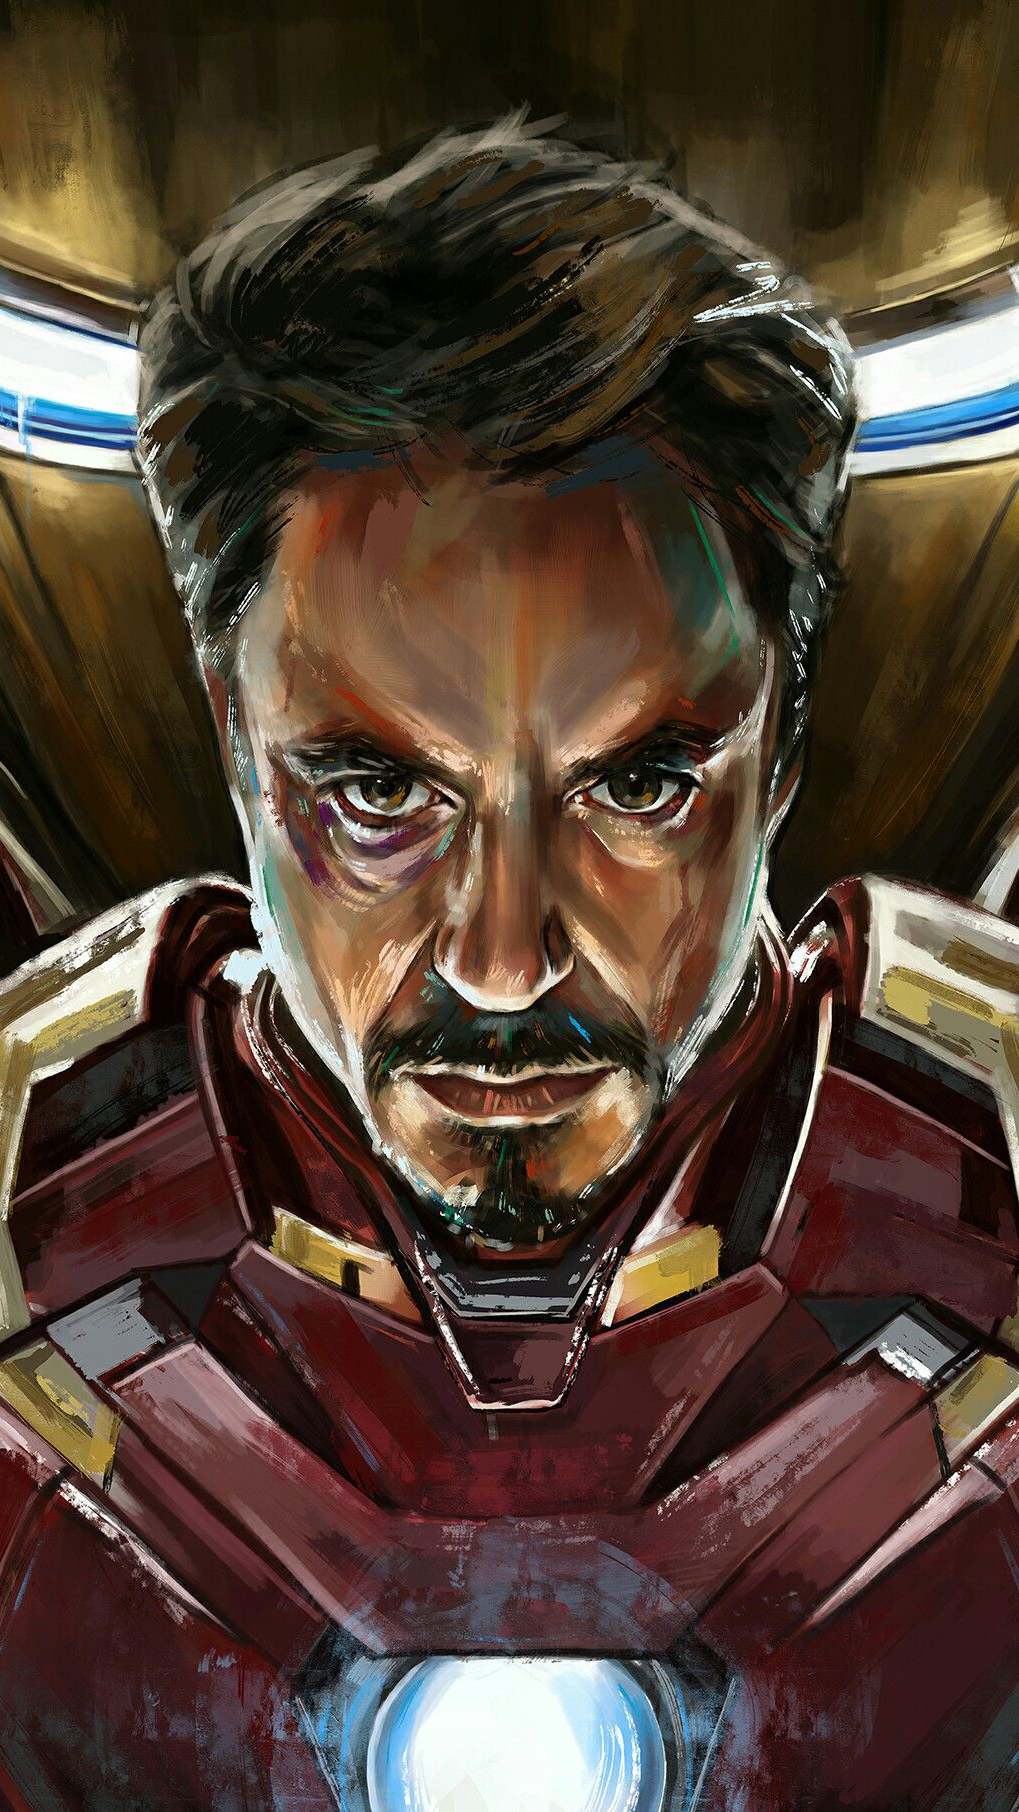 Tony Stark And Iron Man - HD Wallpaper 